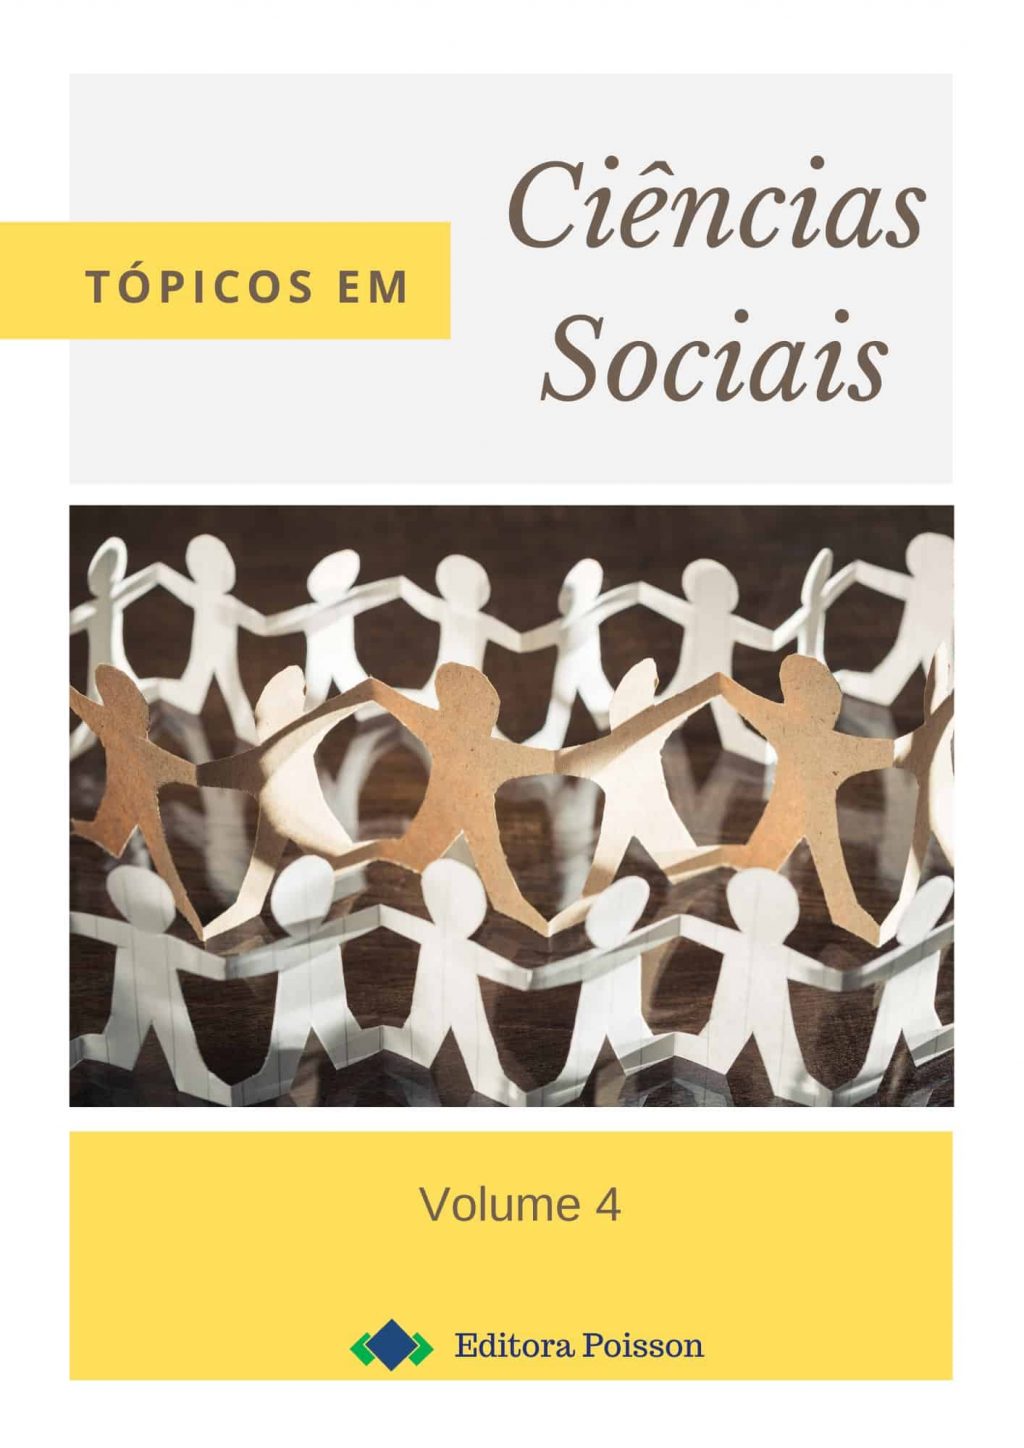 Tópicos em Ciências Sociais – Volume 4